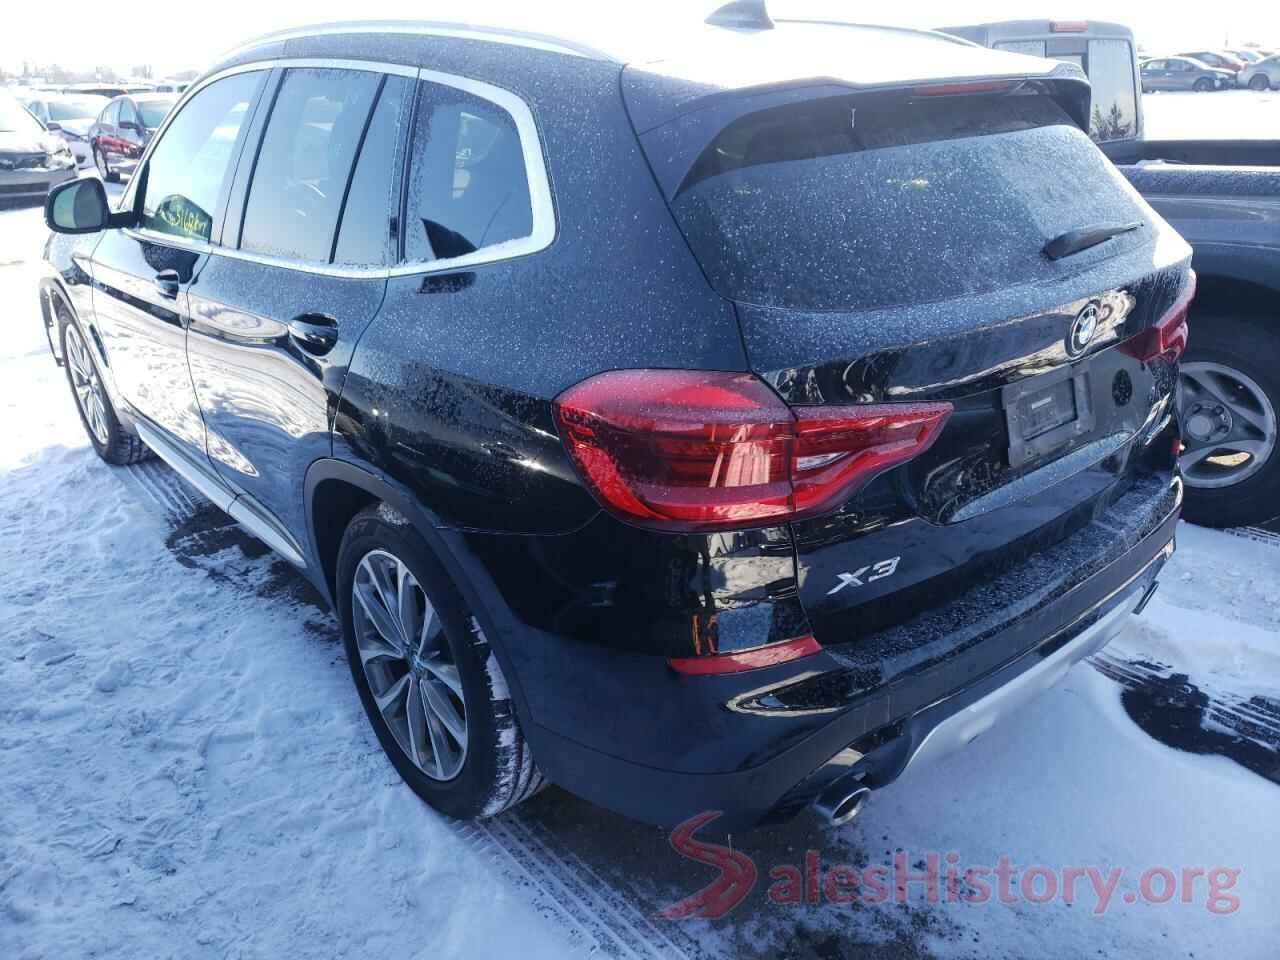 5UXTR9C5XKLR05957 2019 BMW X3